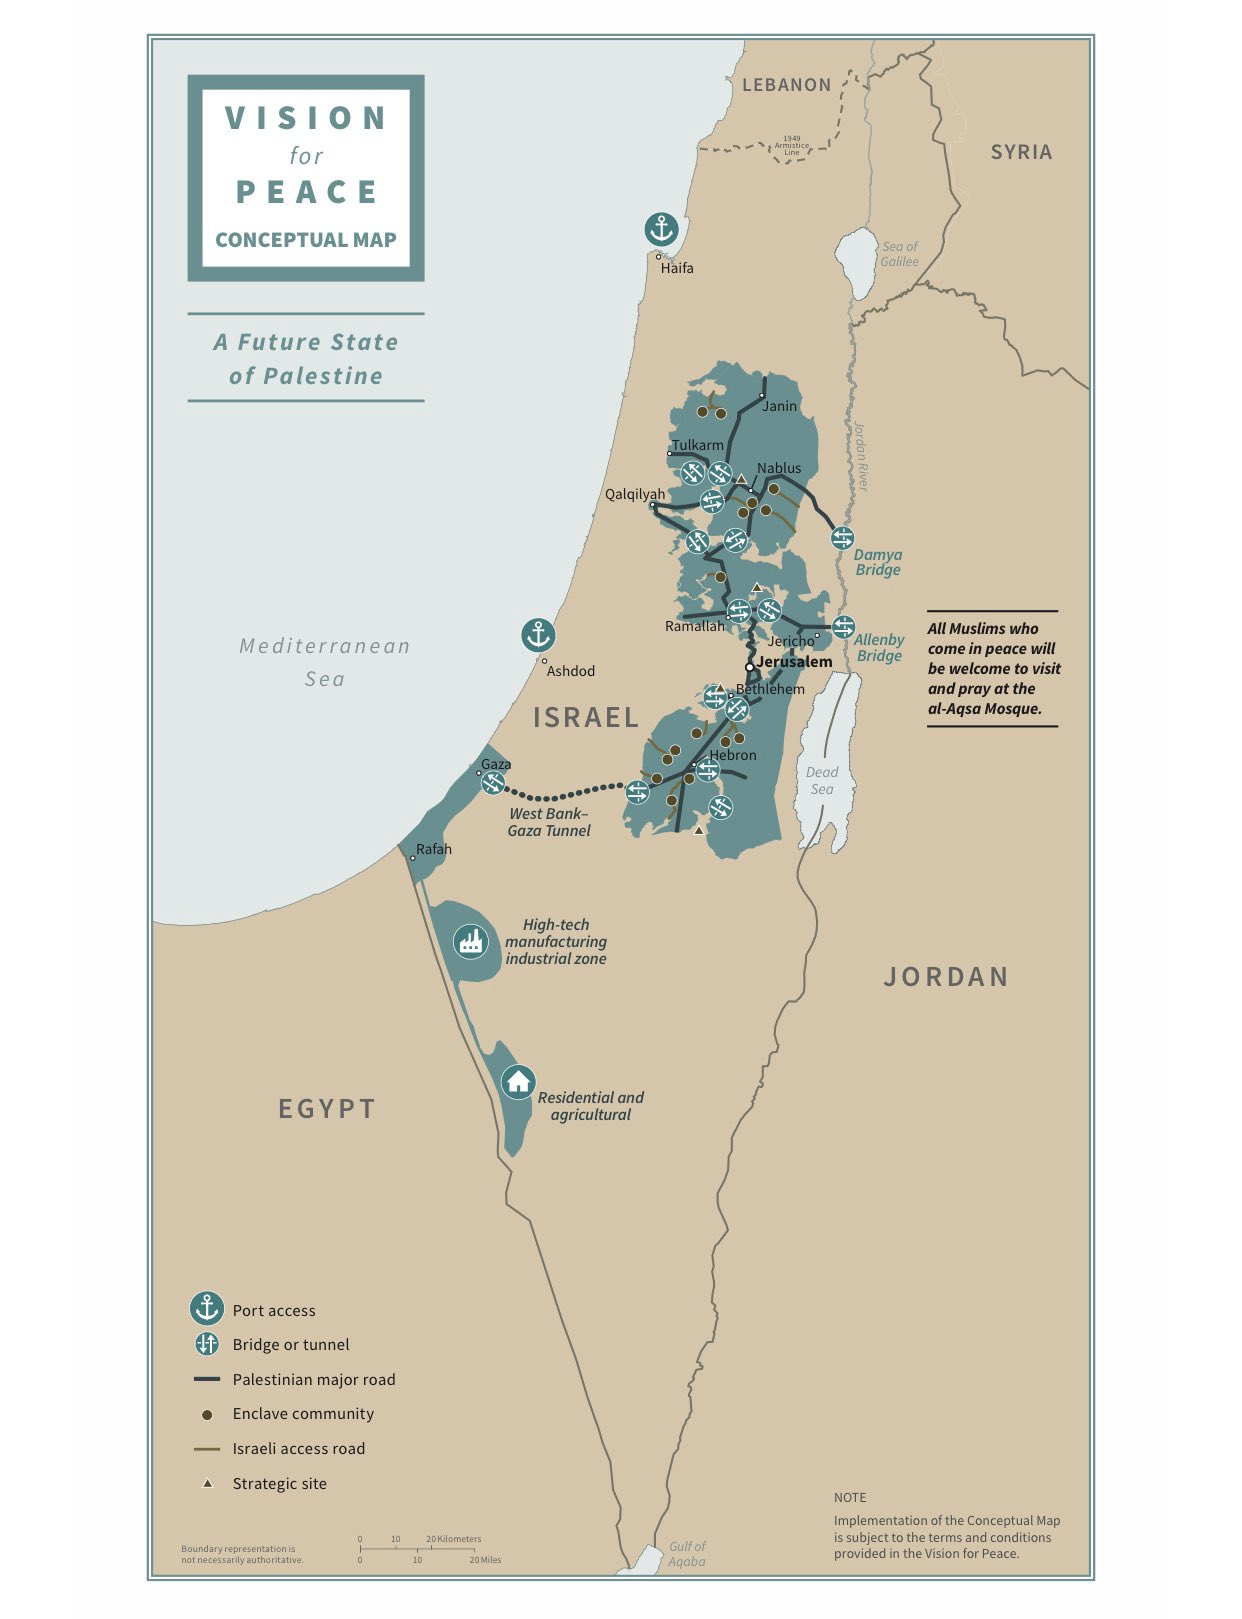 Трамп опубликовал карту новых границ Израиля и Палестины